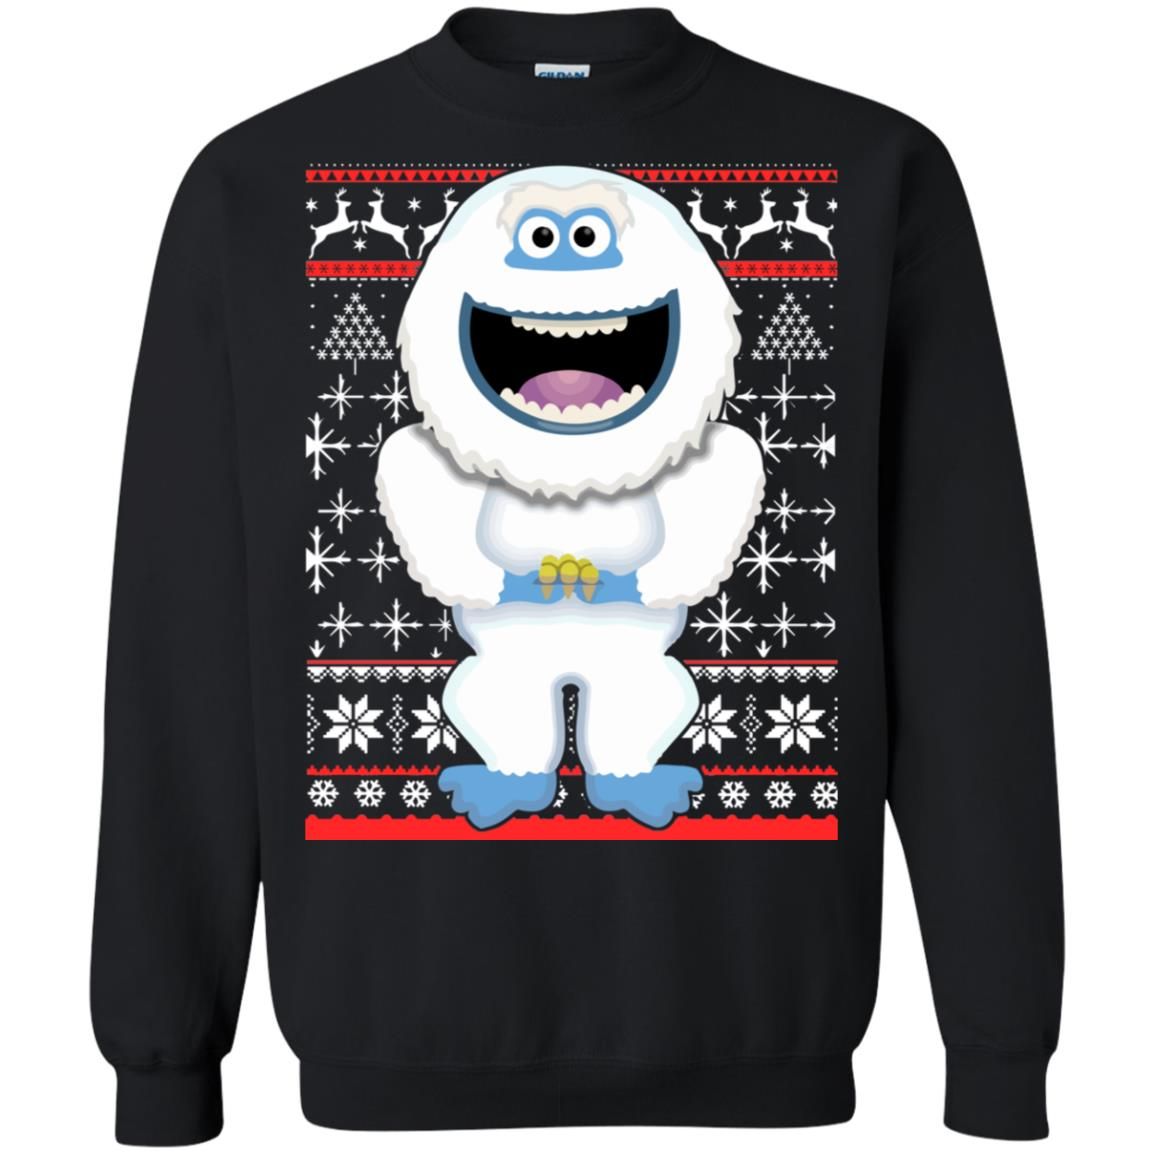 Funny Abominable Snowman Christmas Sweatshirt Sweatshirt Black S